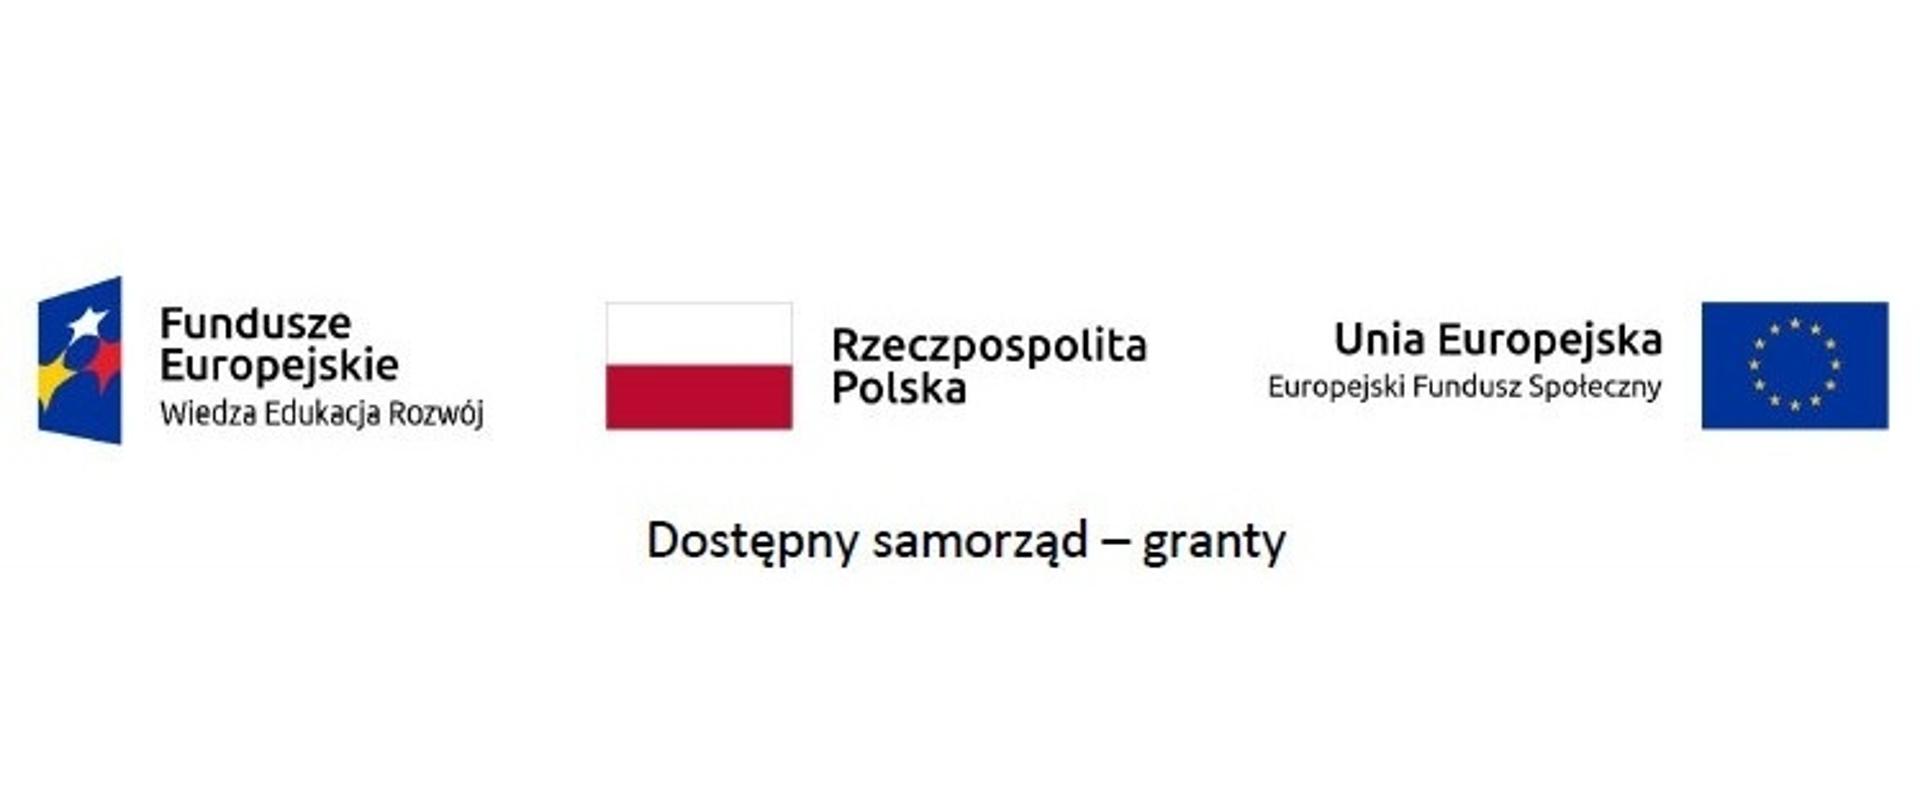 Logotypy: Fundusze Europejskie, flaga Polski, Europejski Fundusz Społeczny